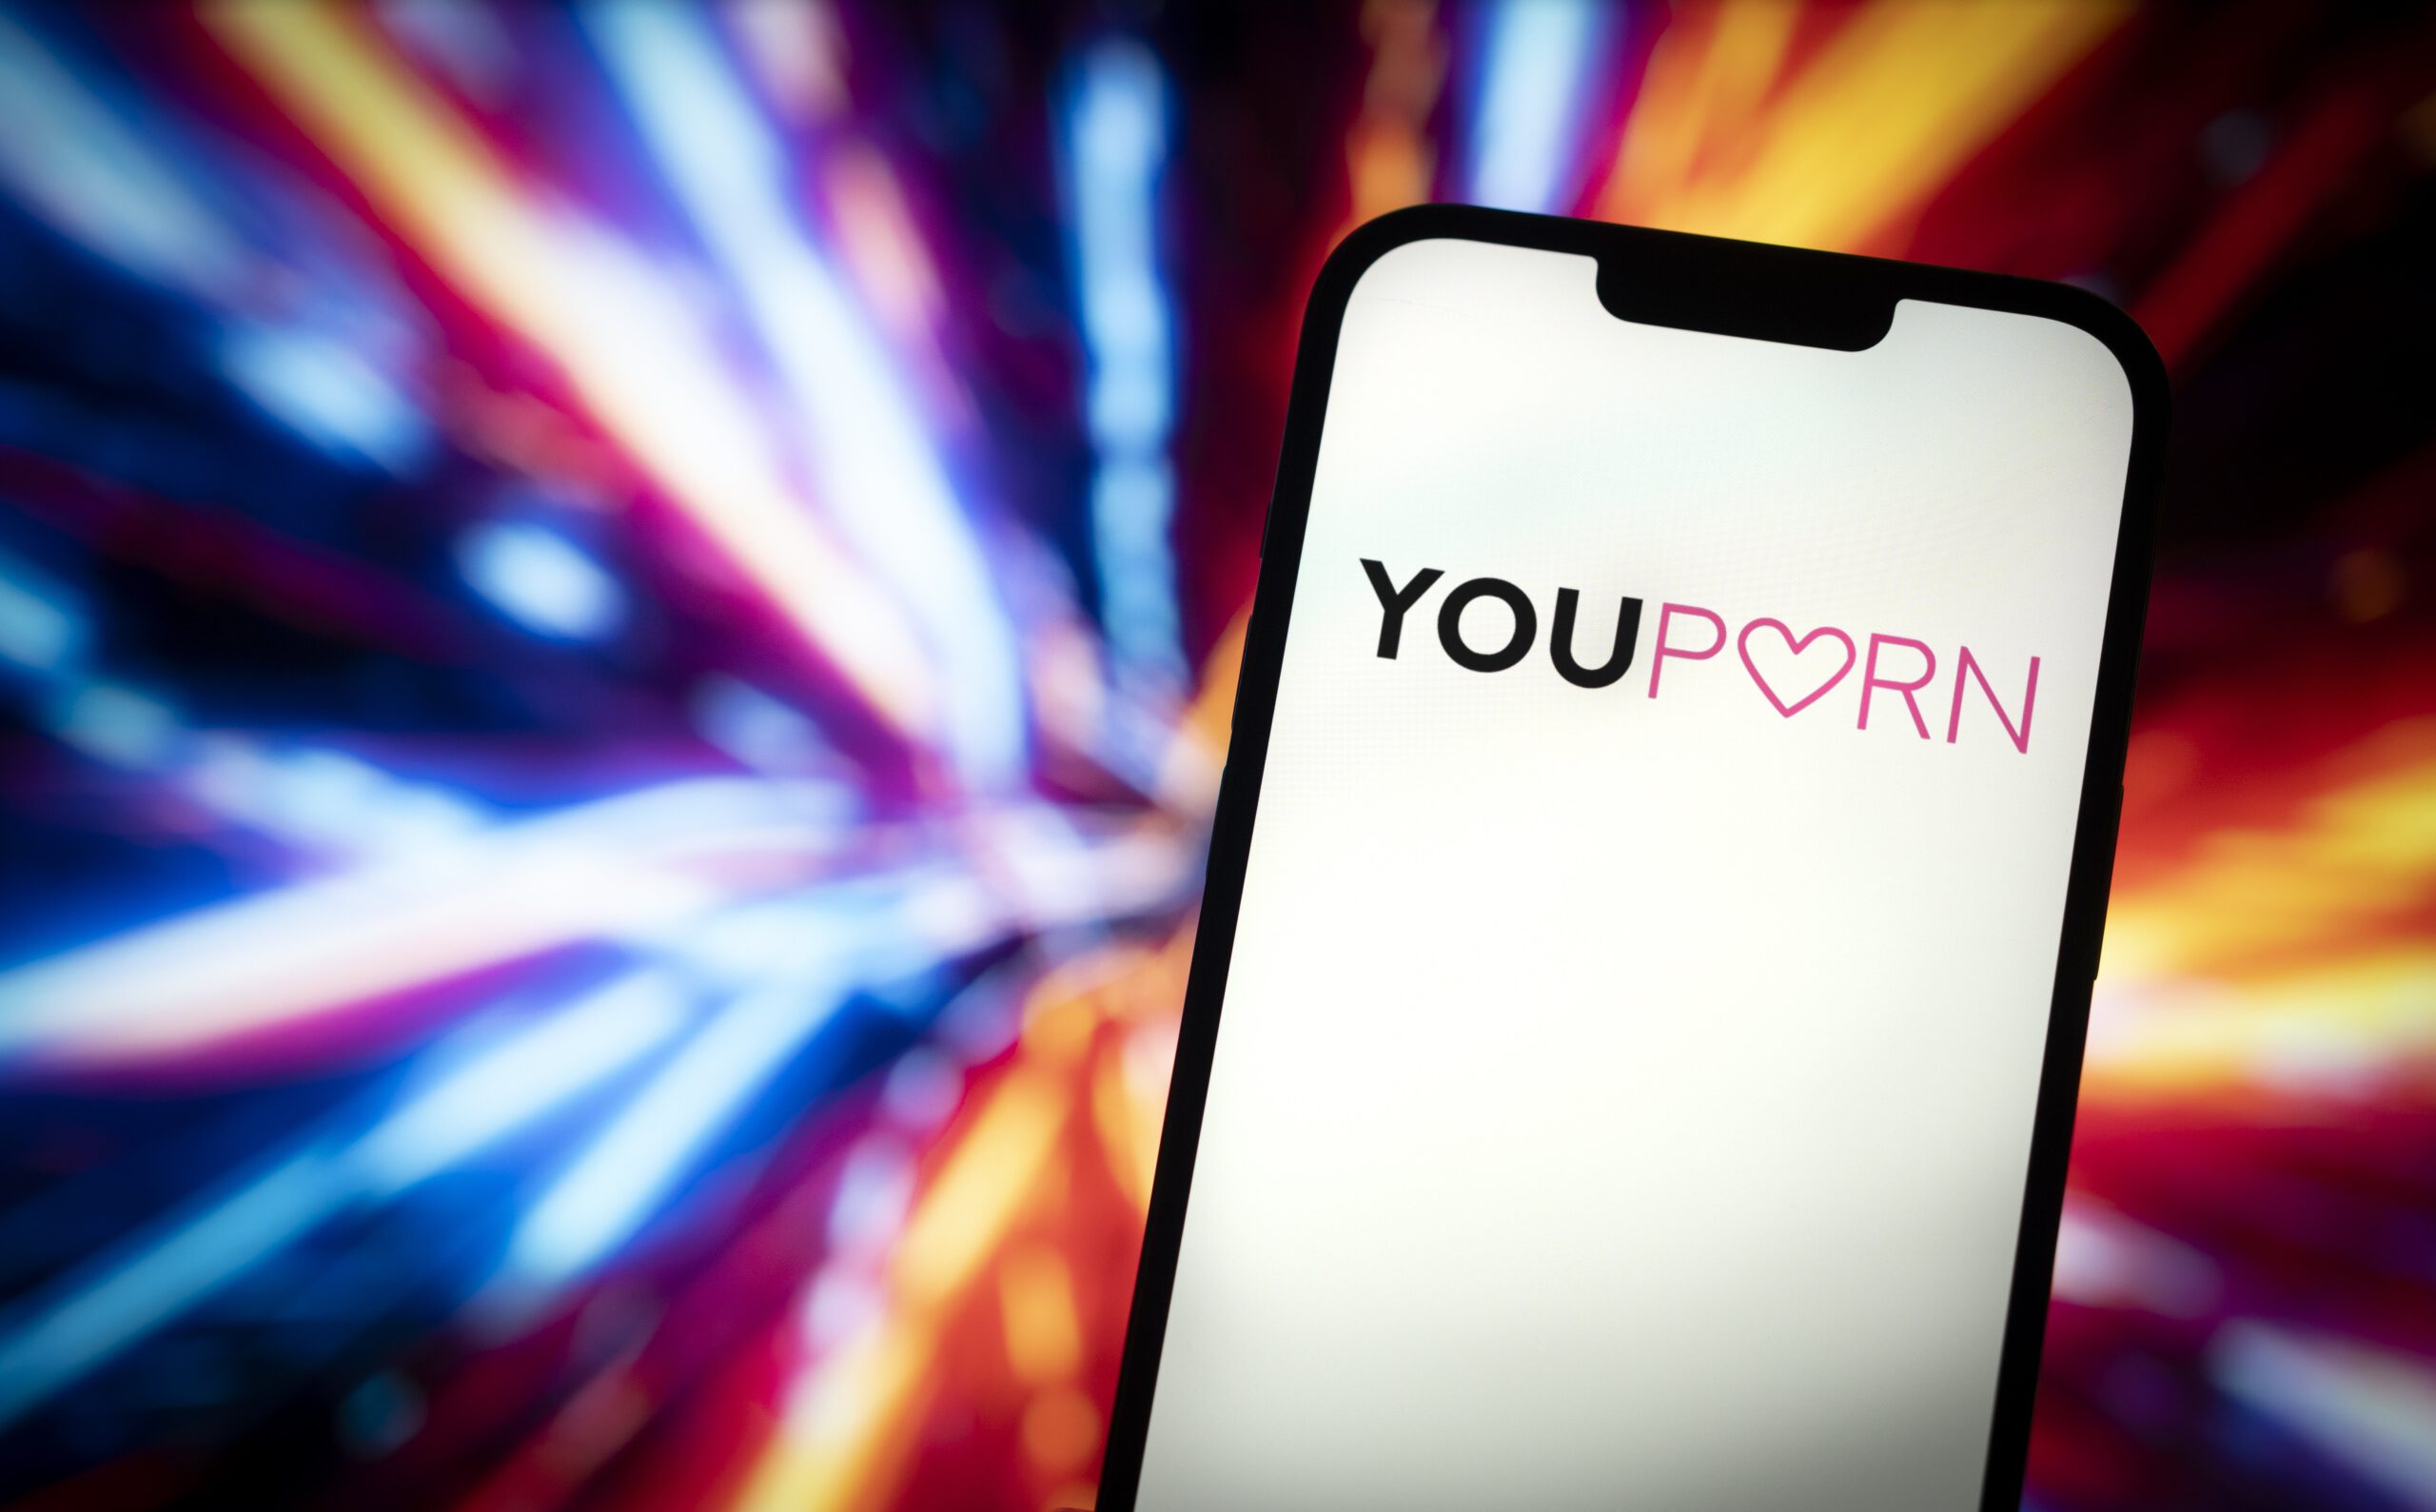 YouPorn logo on phone